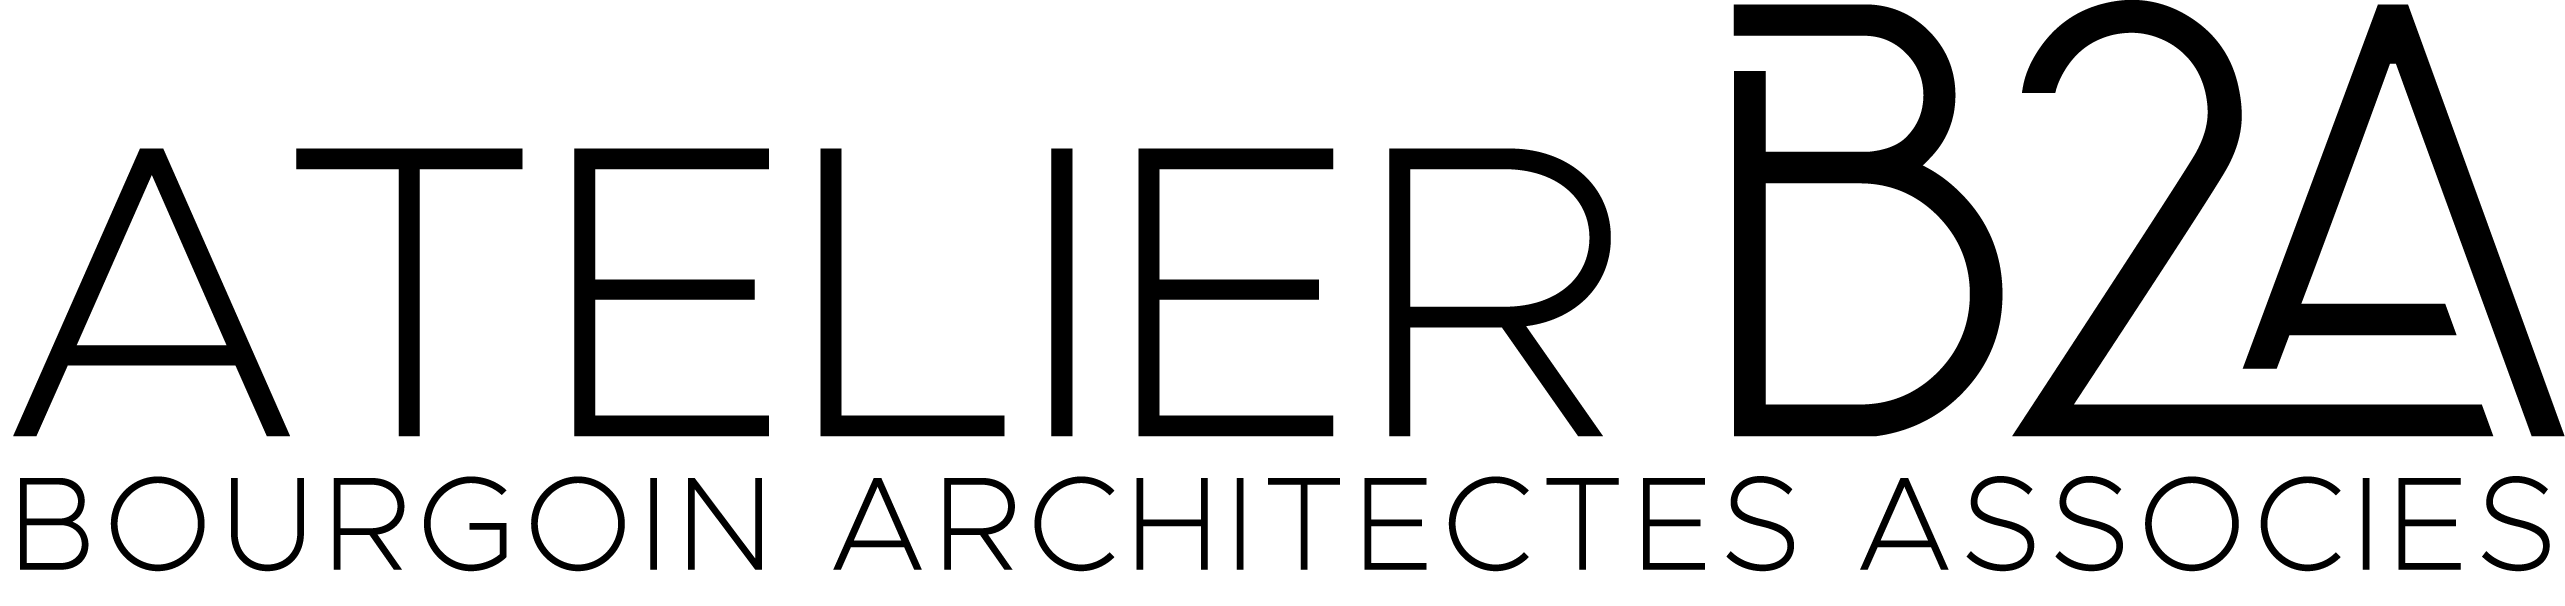 Atelier B2A - Bourgoin Architectes associés